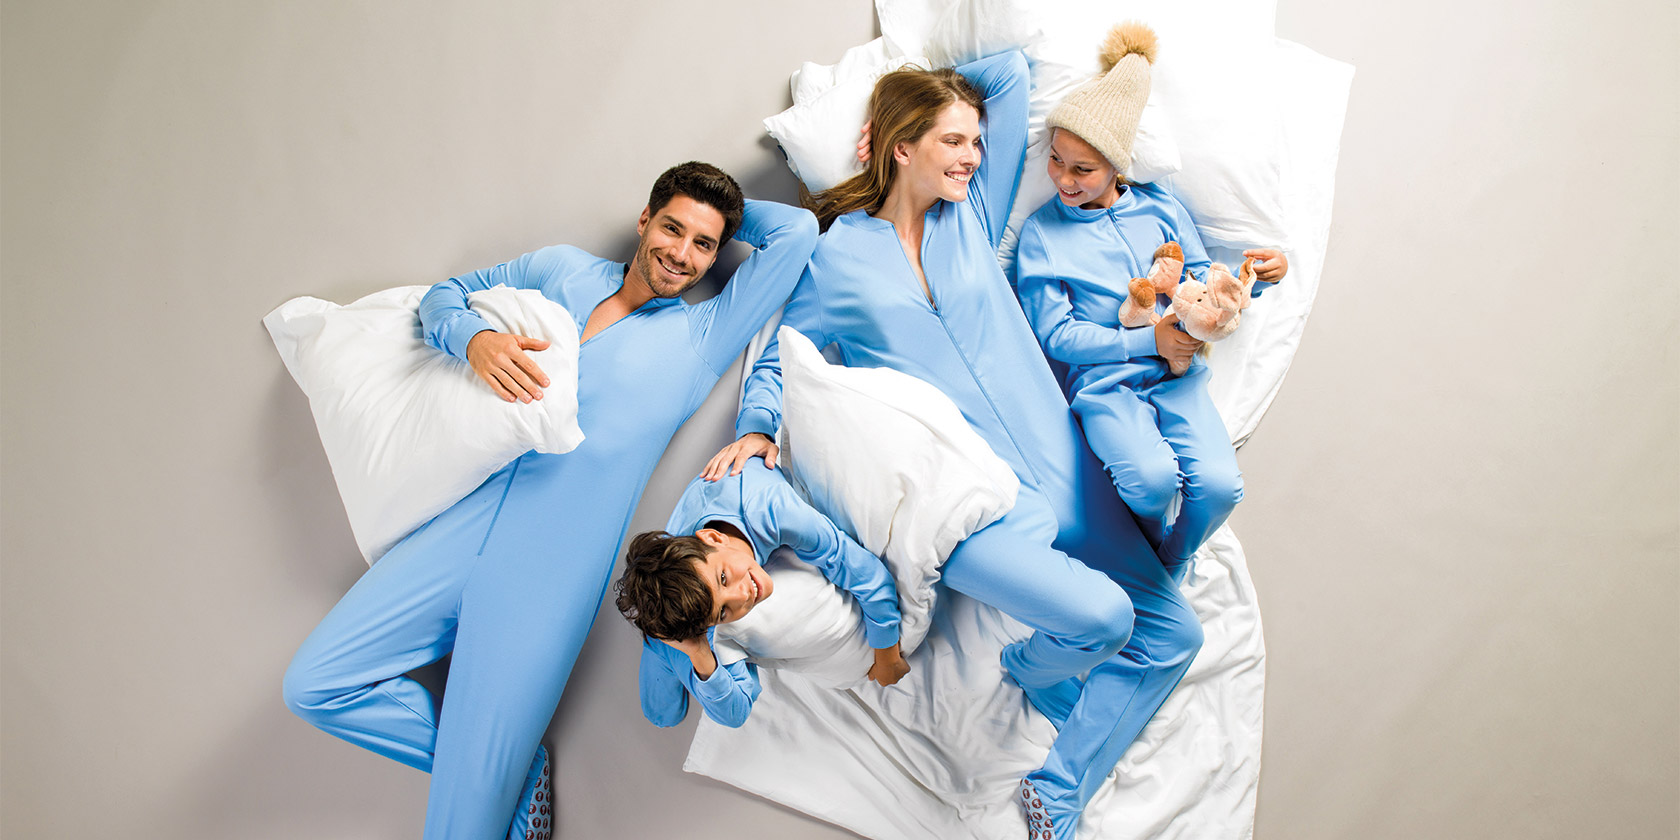 Füsschenpyjama hellblau für die ganze Familie